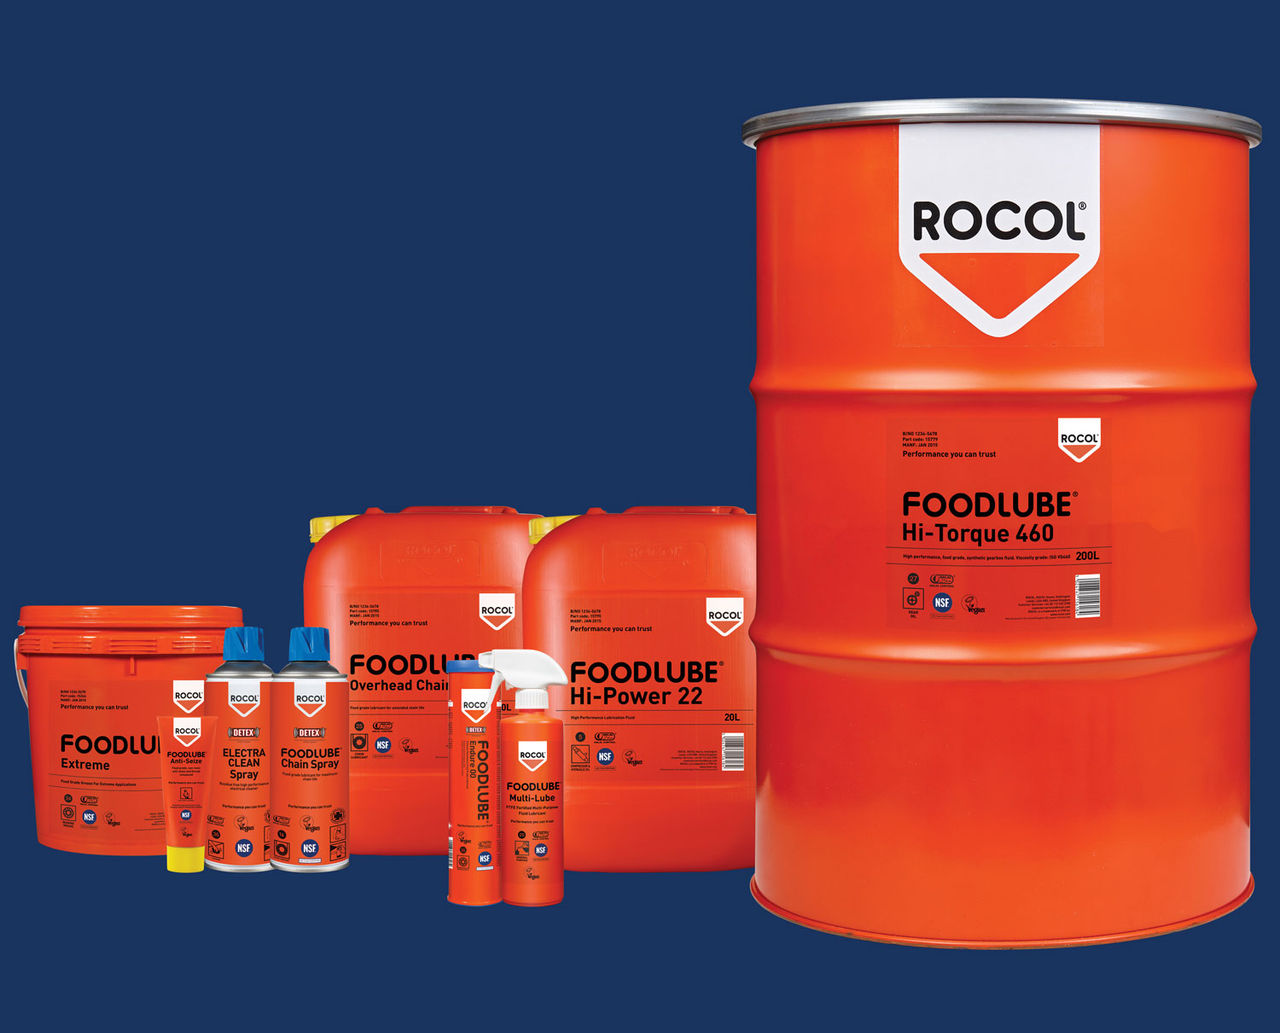 ROCOL FOODLUBE Product Range